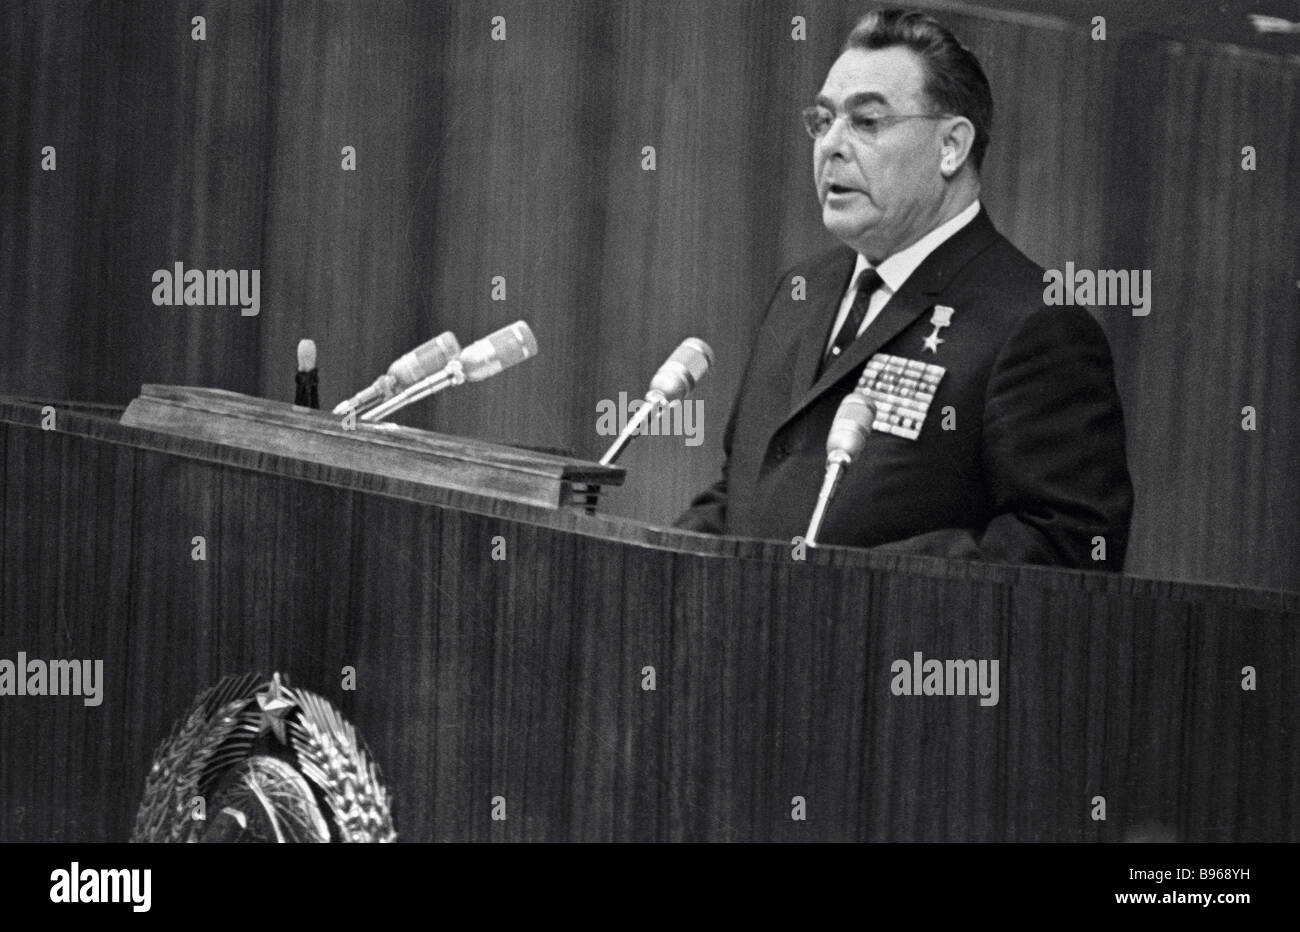 Председатель цк кпсс советского союза. Первый секретарь ЦК КПСС 1965г.